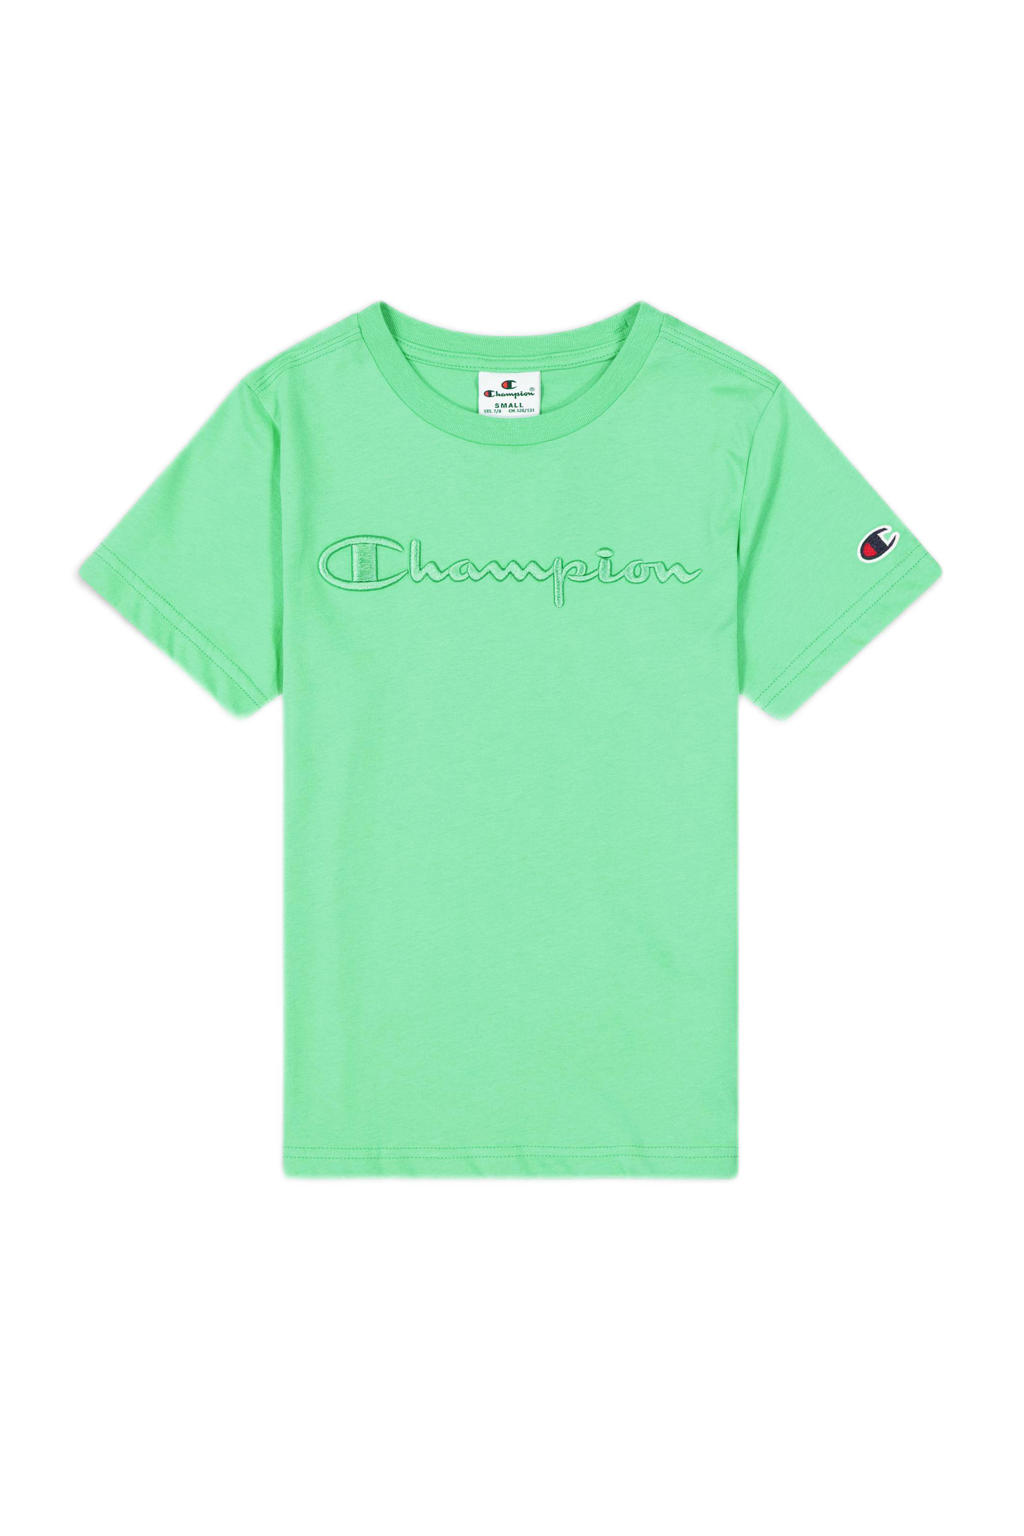 Groene jongens Champion T-shirt van katoen met logo dessin, korte mouwen en ronde hals